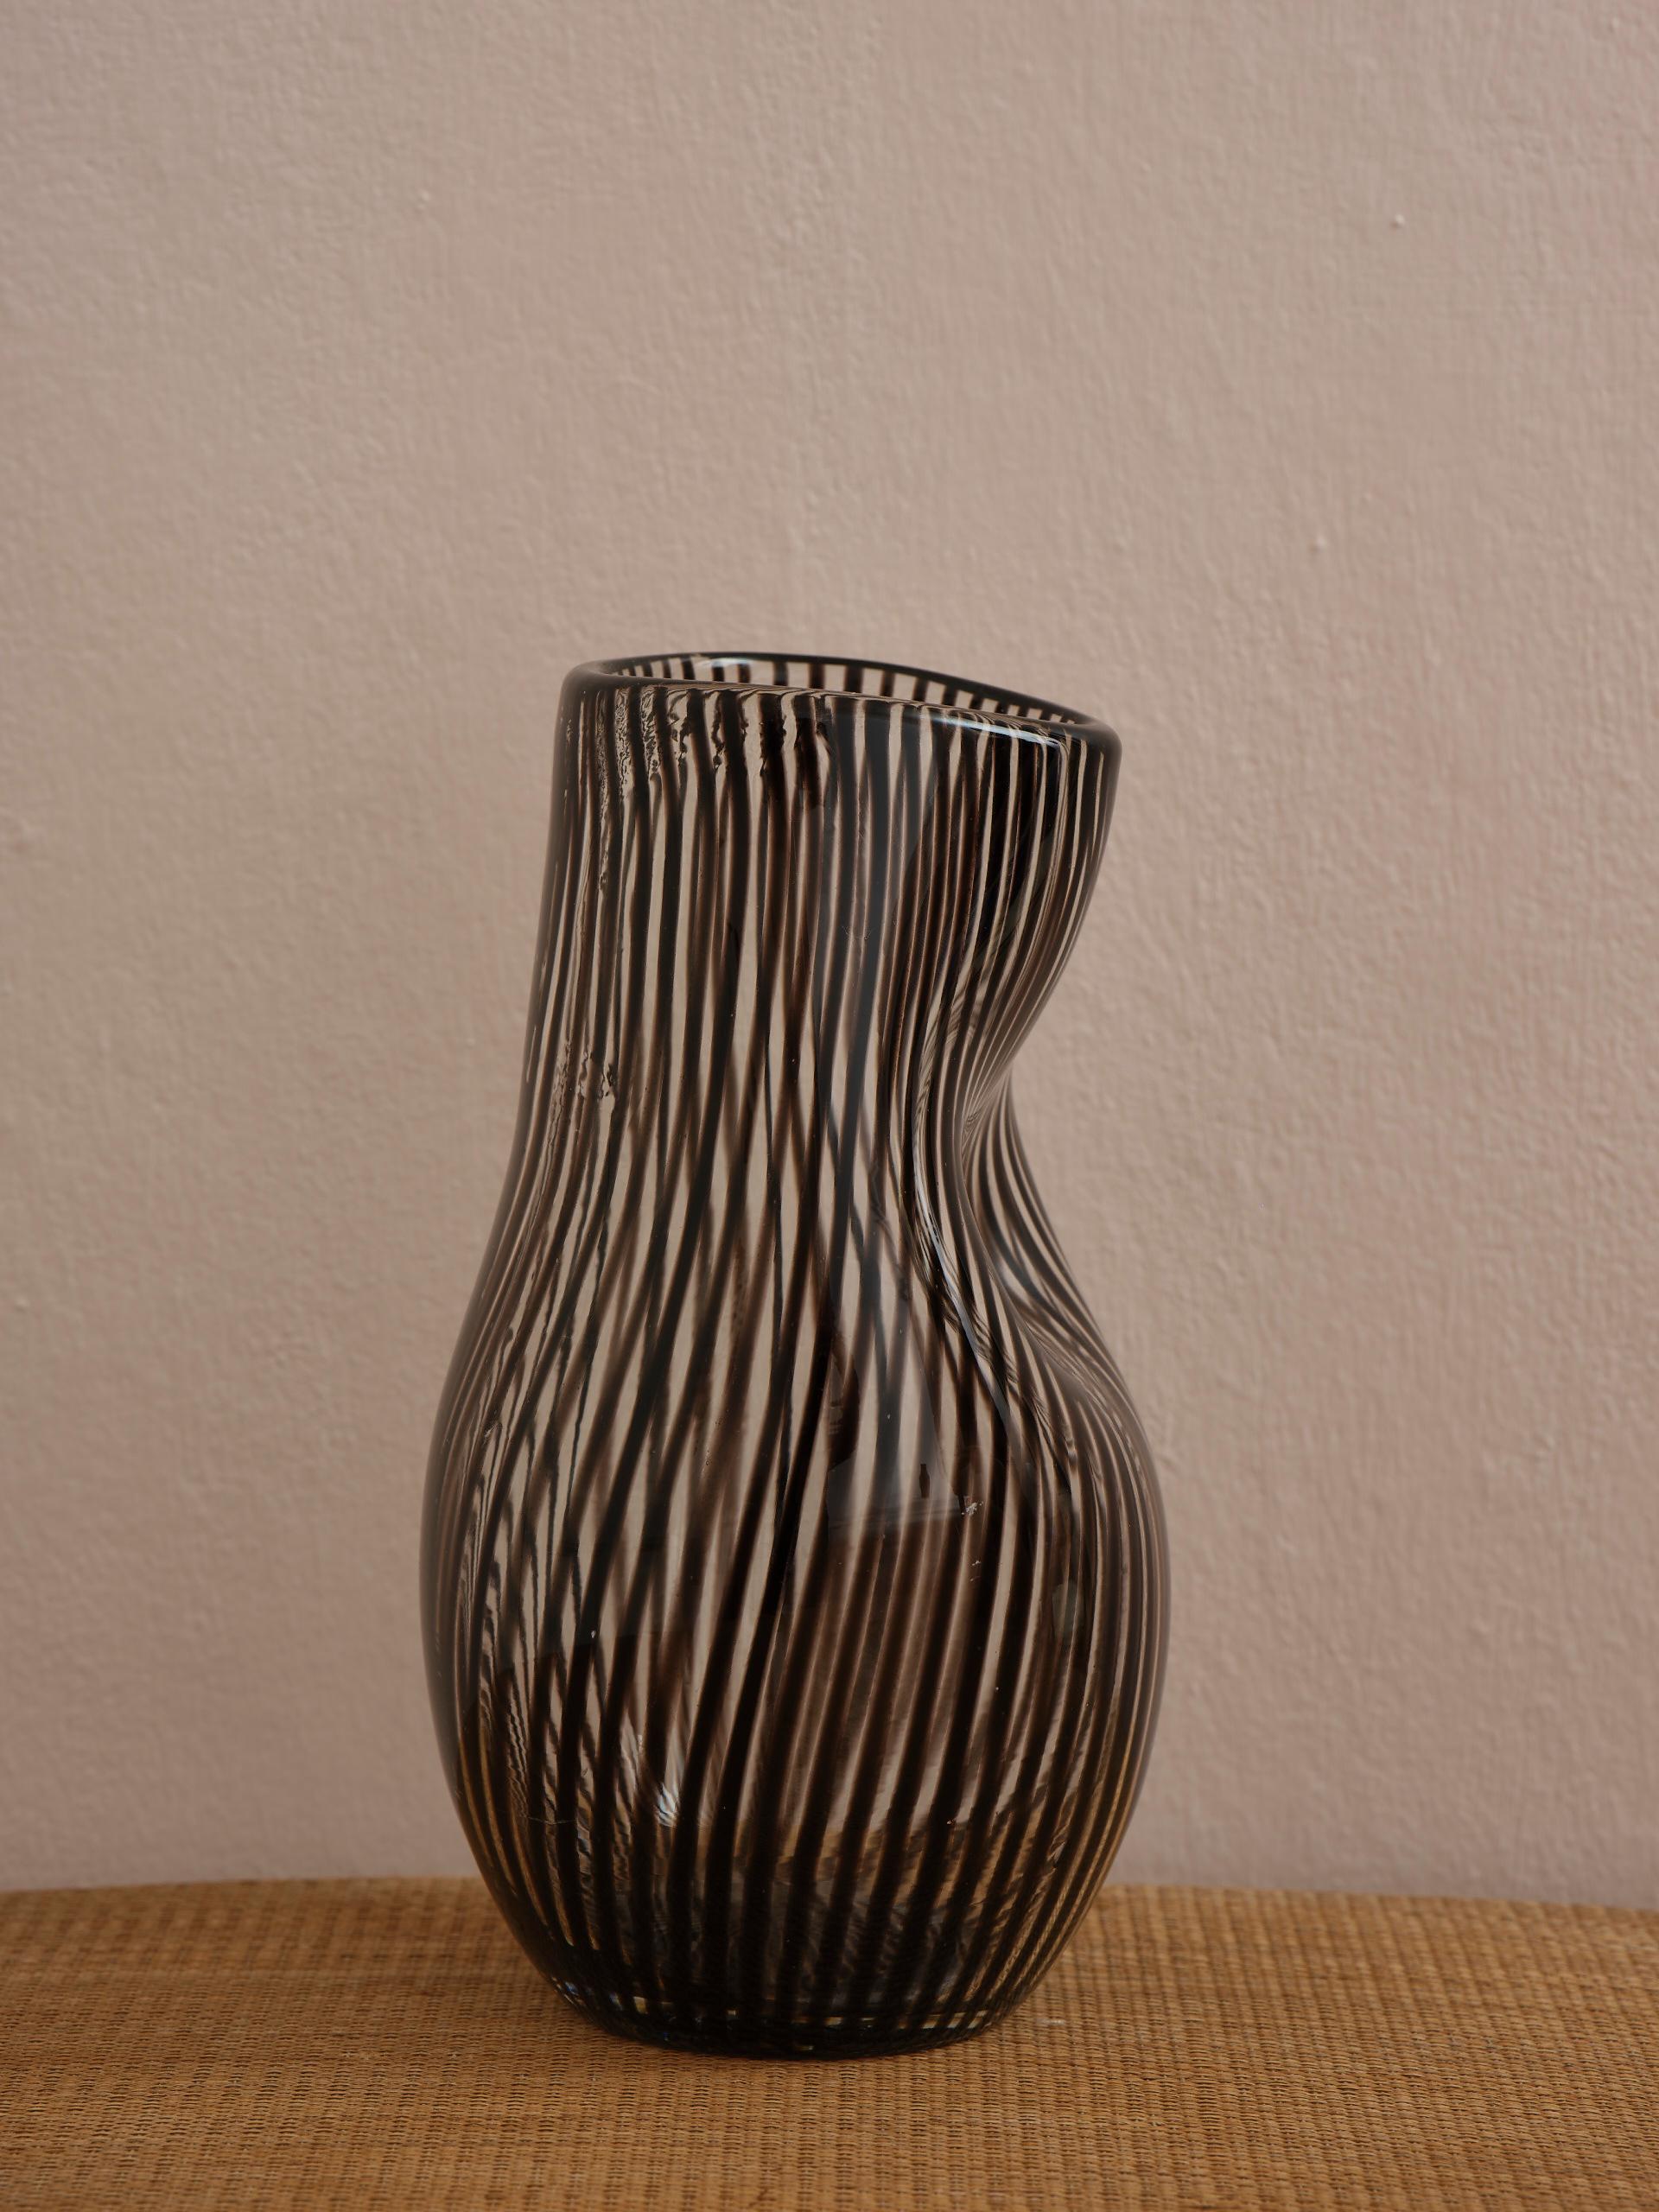 Diese schwere, gestreifte schwedische Vase aus der Mitte des Jahrhunderts aus weinrotem und klarem Glas, mundgeblasen und mundgeformt, hat eine ganz besondere Form. 
Ein einzigartiges Stück Handwerkskunst aus der Mitte des 20. Jahrhunderts.
Höhe 23